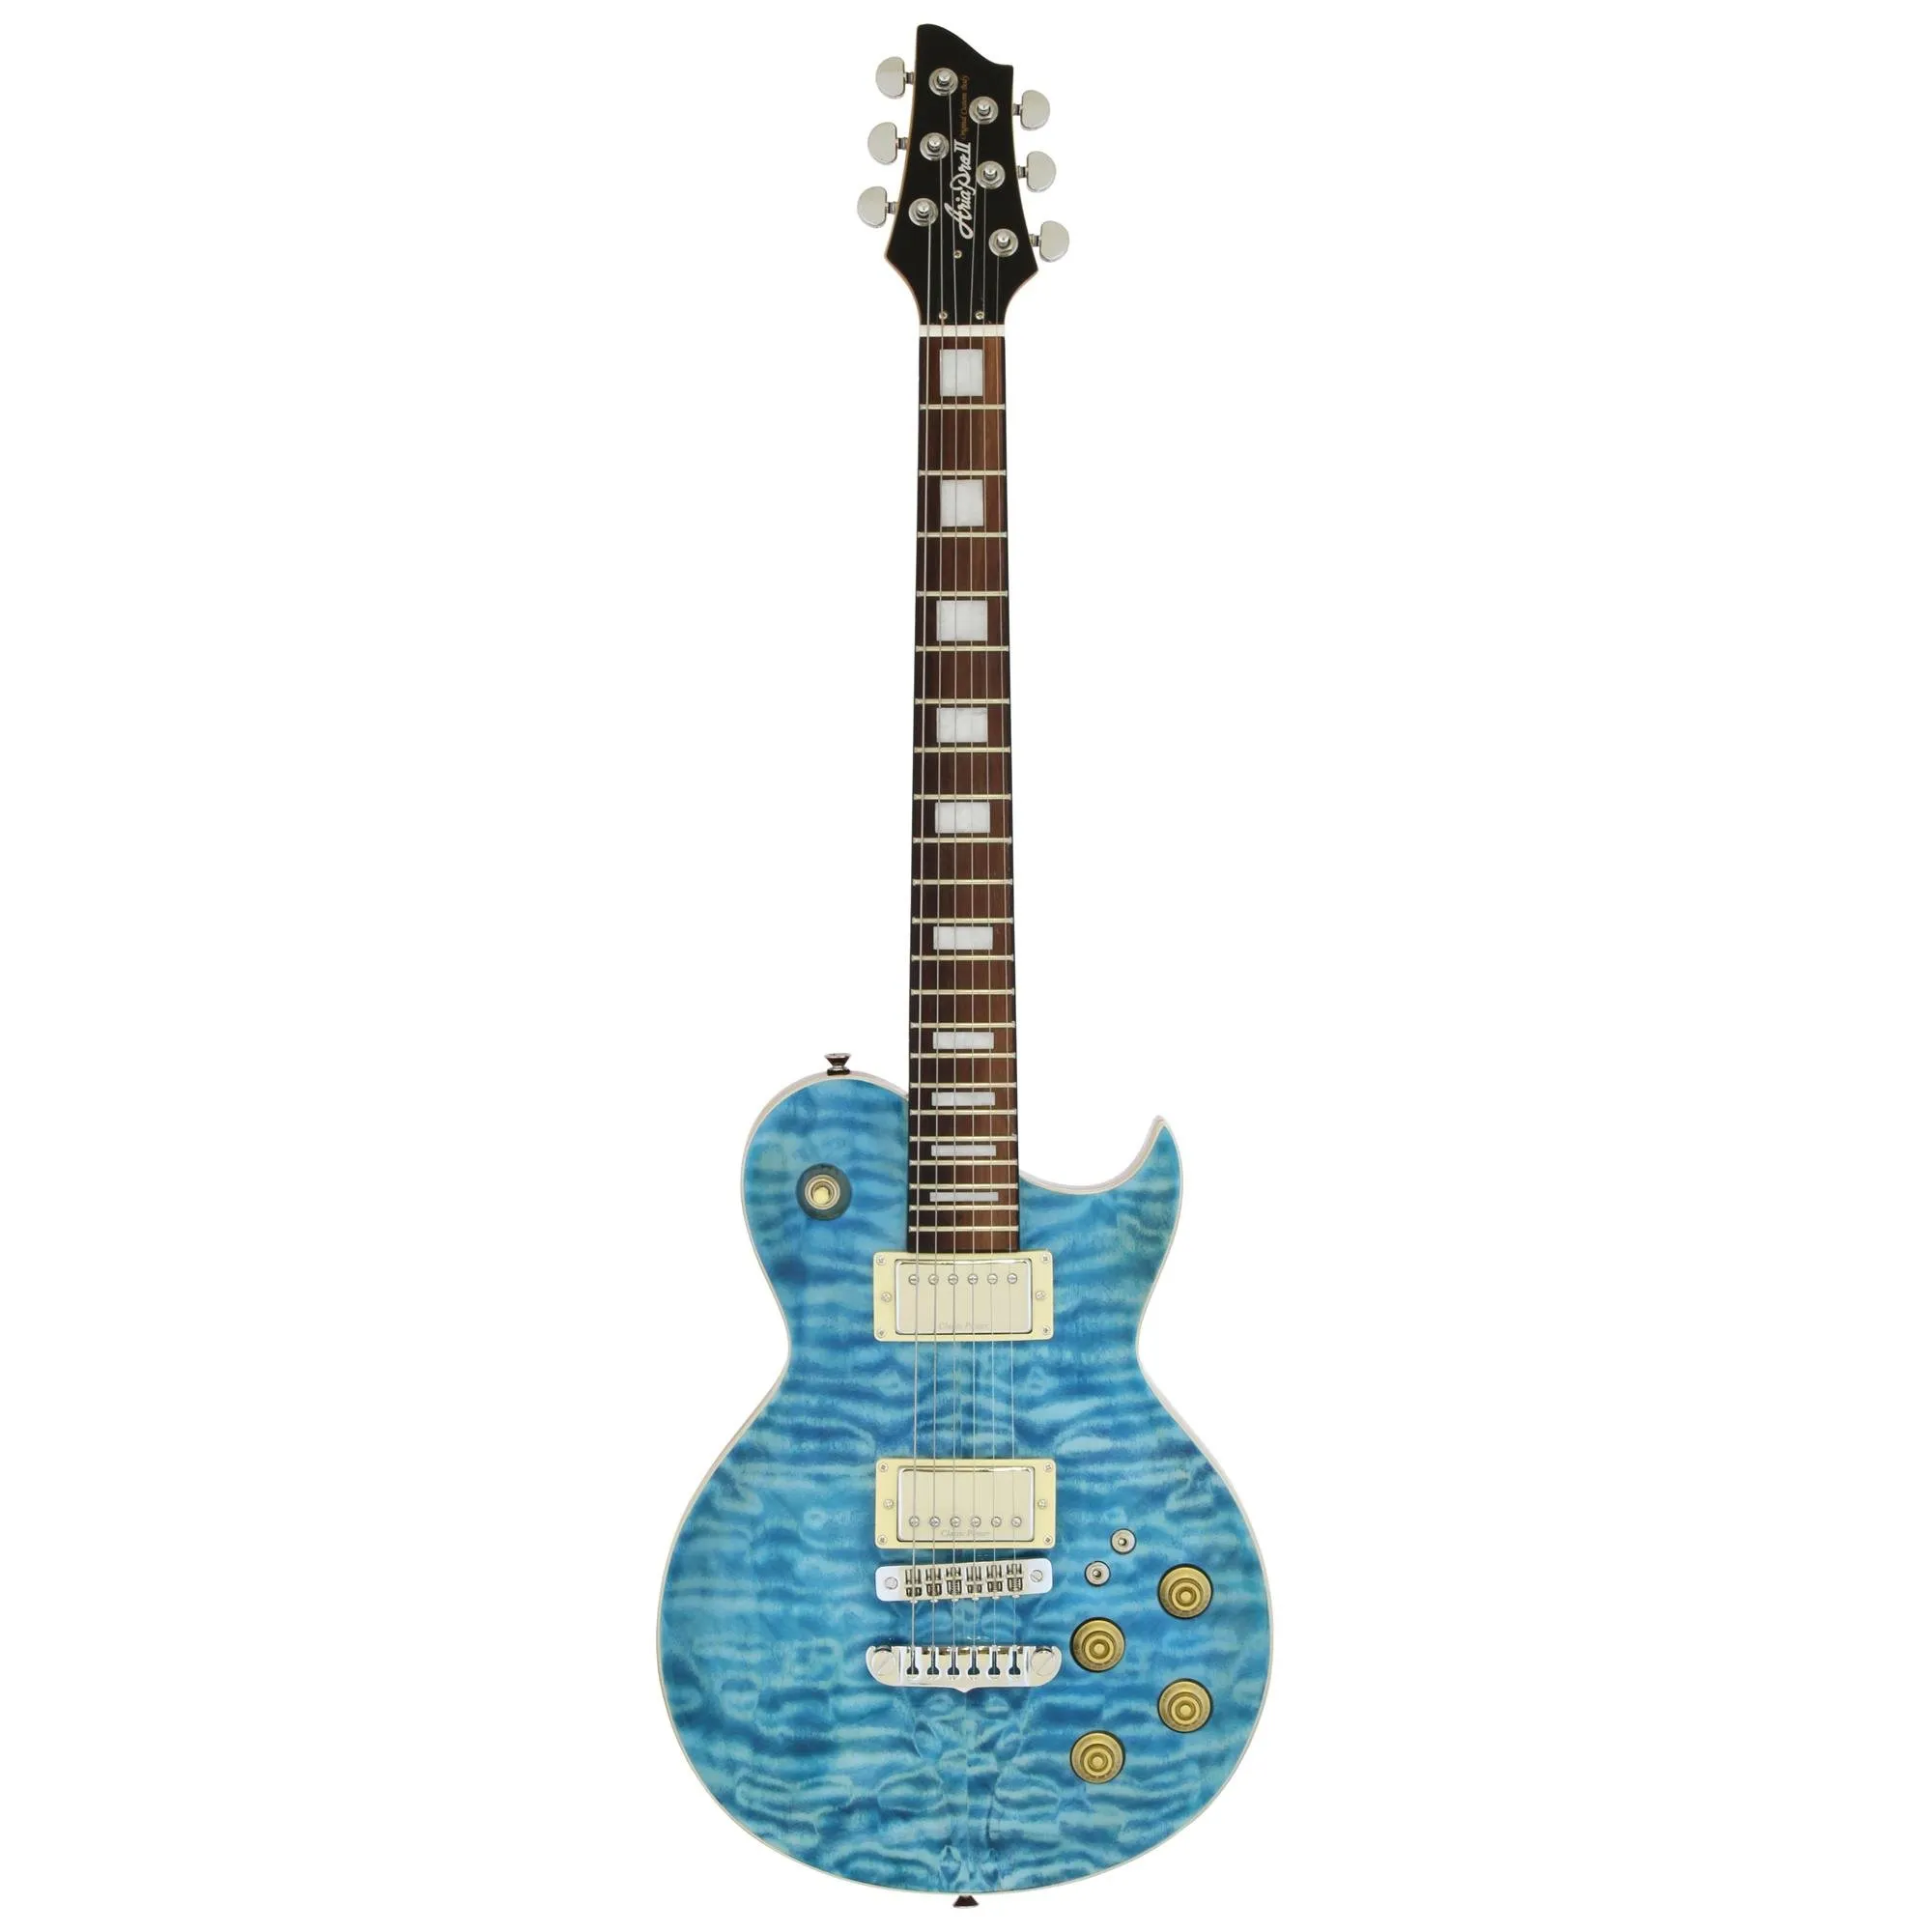 Guitarra Aria Pro II PE-480 See-Through Emerald Blue por 3.548,00 à vista no boleto/pix ou parcele em até 12x sem juros. Compre na loja Mundomax!